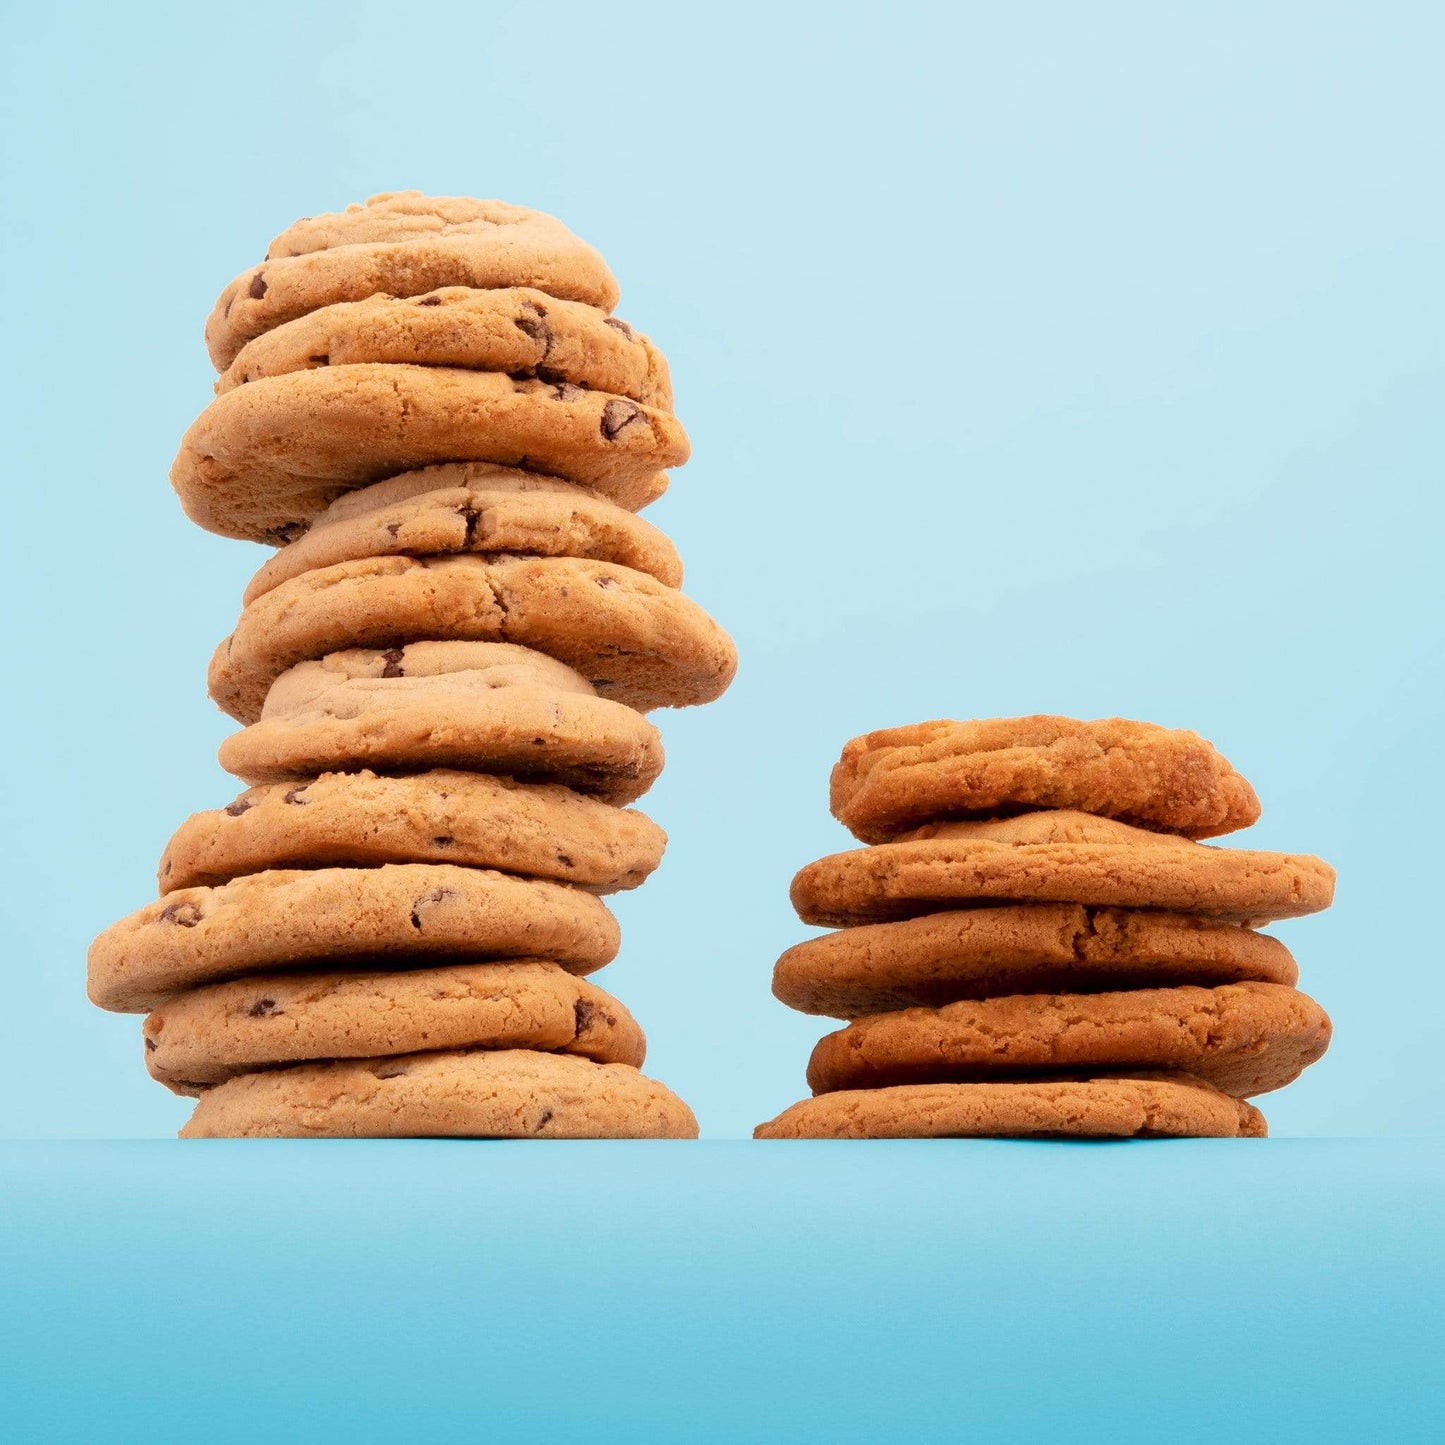 
                  
                    Assorted Bulk Pack Cookies by Nunbelievable
                  
                